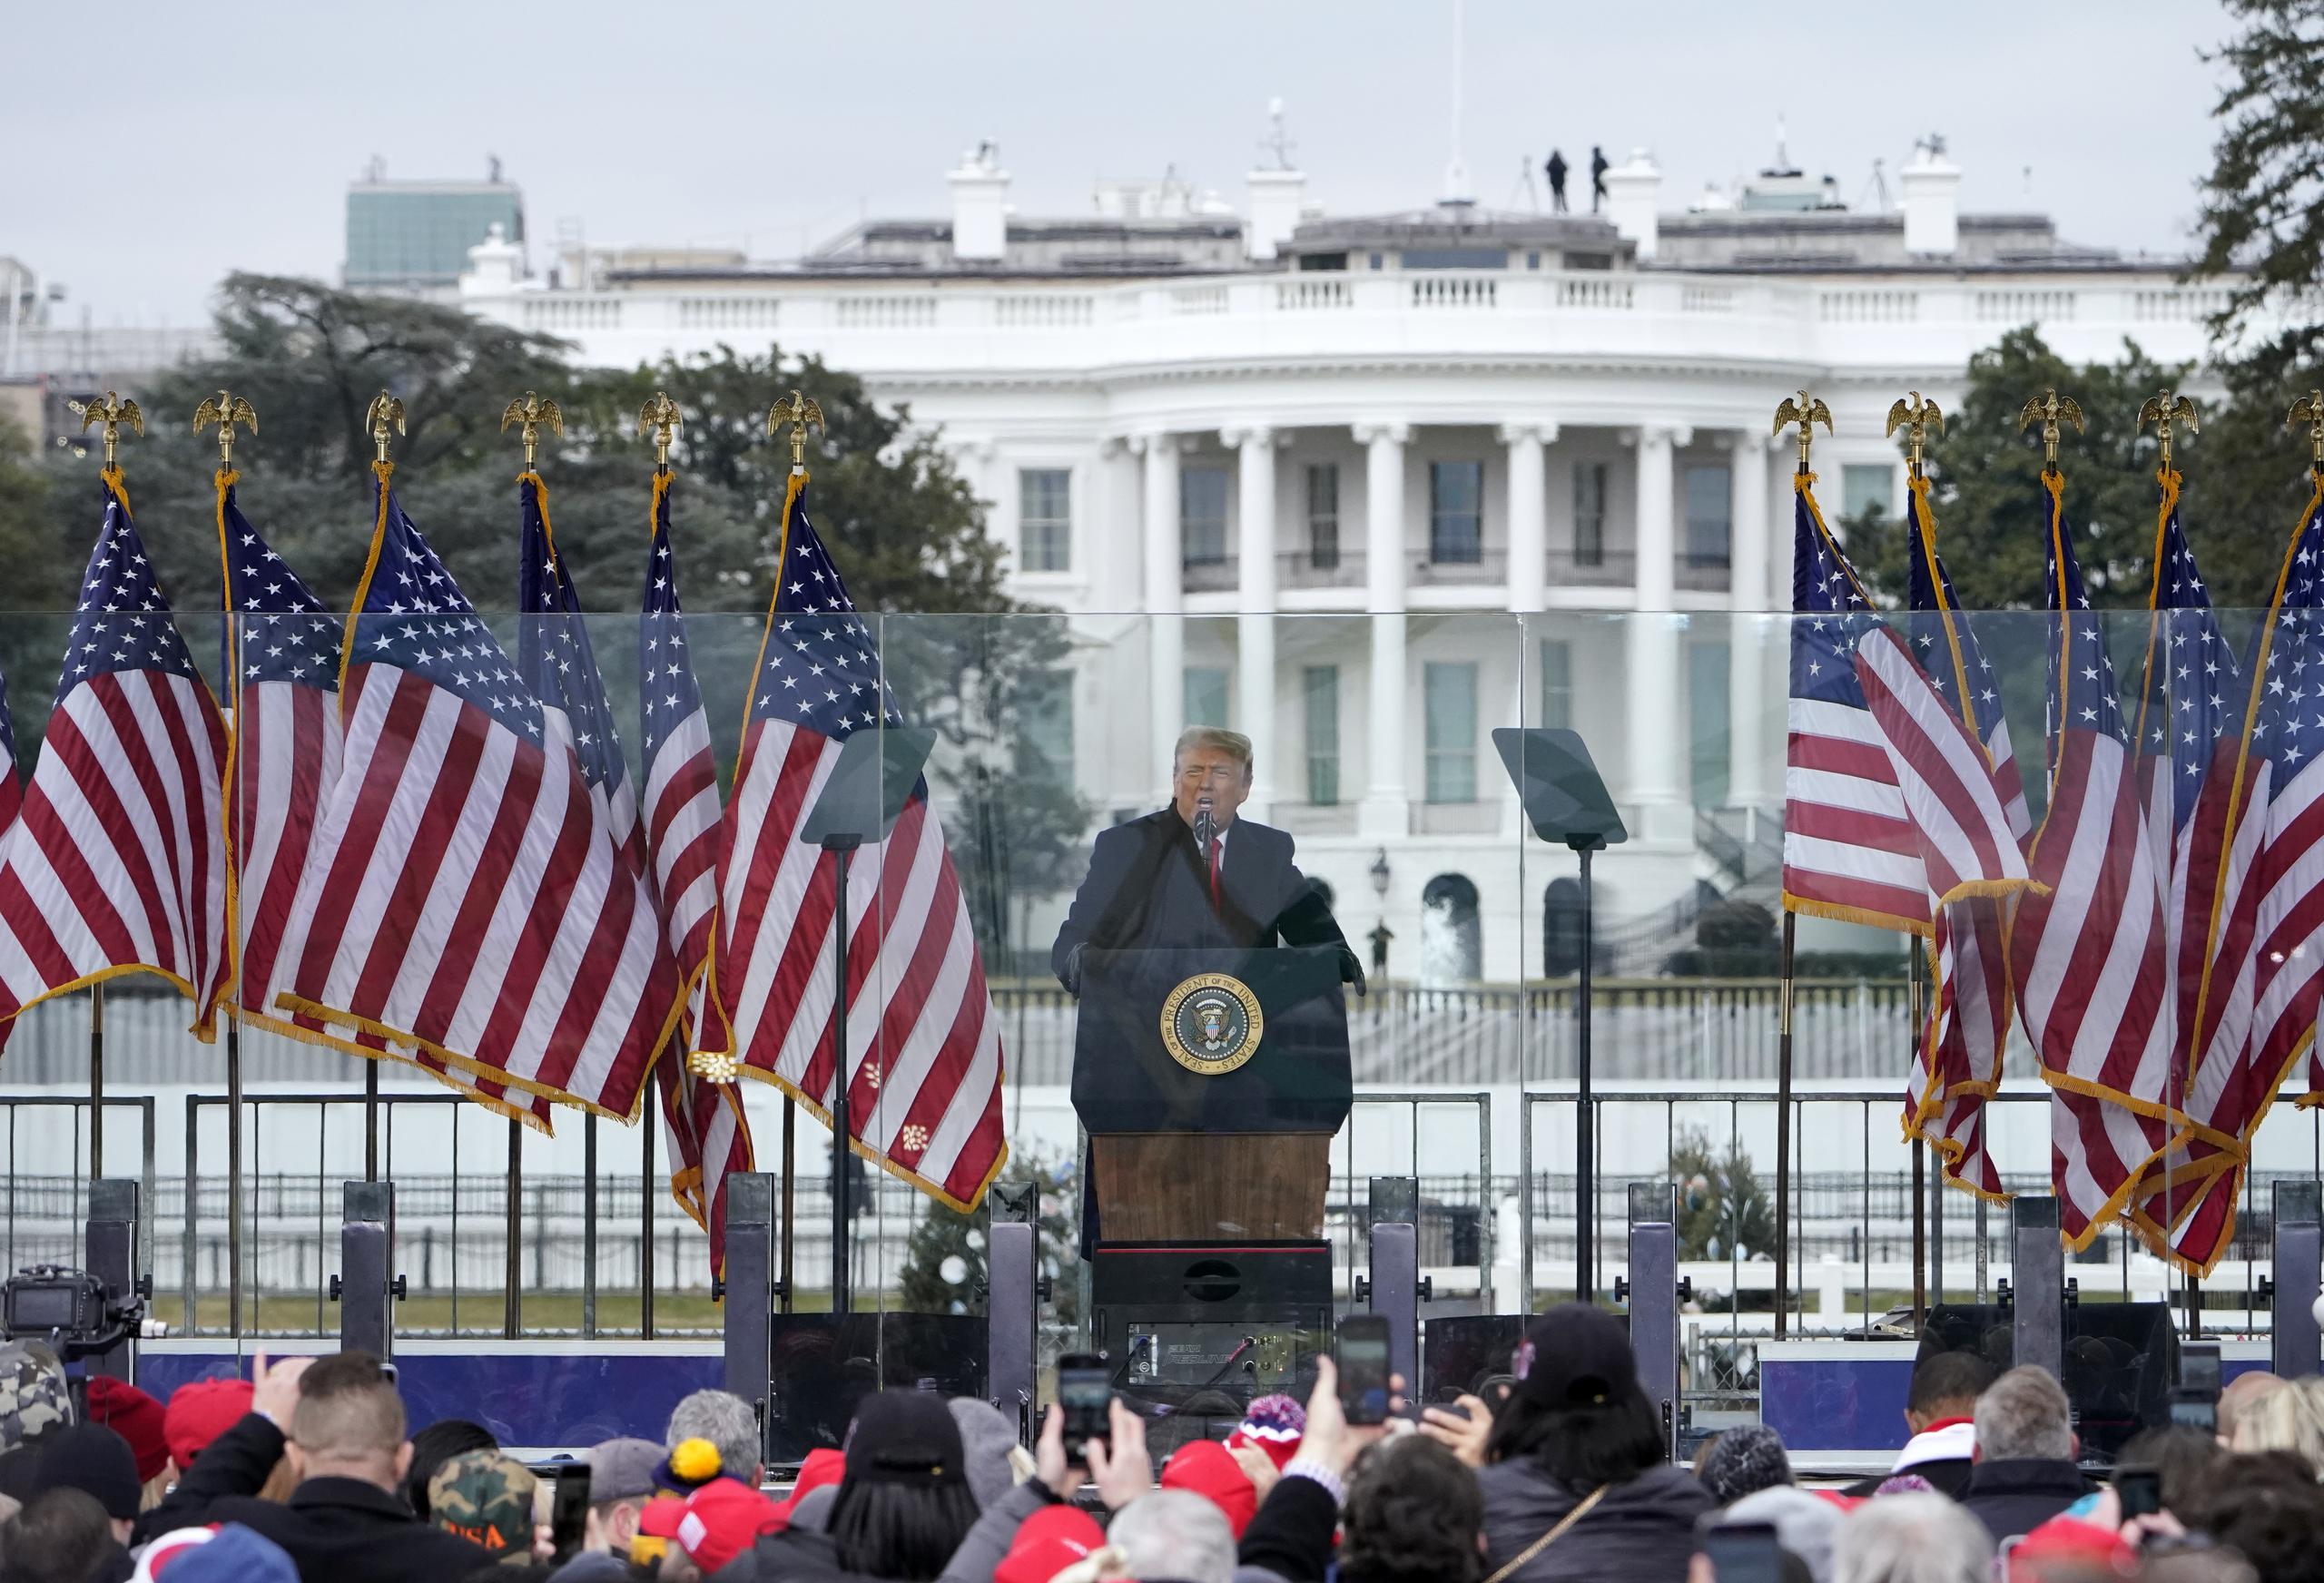 El día del ataque, el entonces presidente Donald Trump convocó un mitin frente a la Casa Blanca, en Washington, en el que dijo a la multitud que se dirigieran al Capitolio, pues “nunca recuperarán nuestro país siendo débiles”.